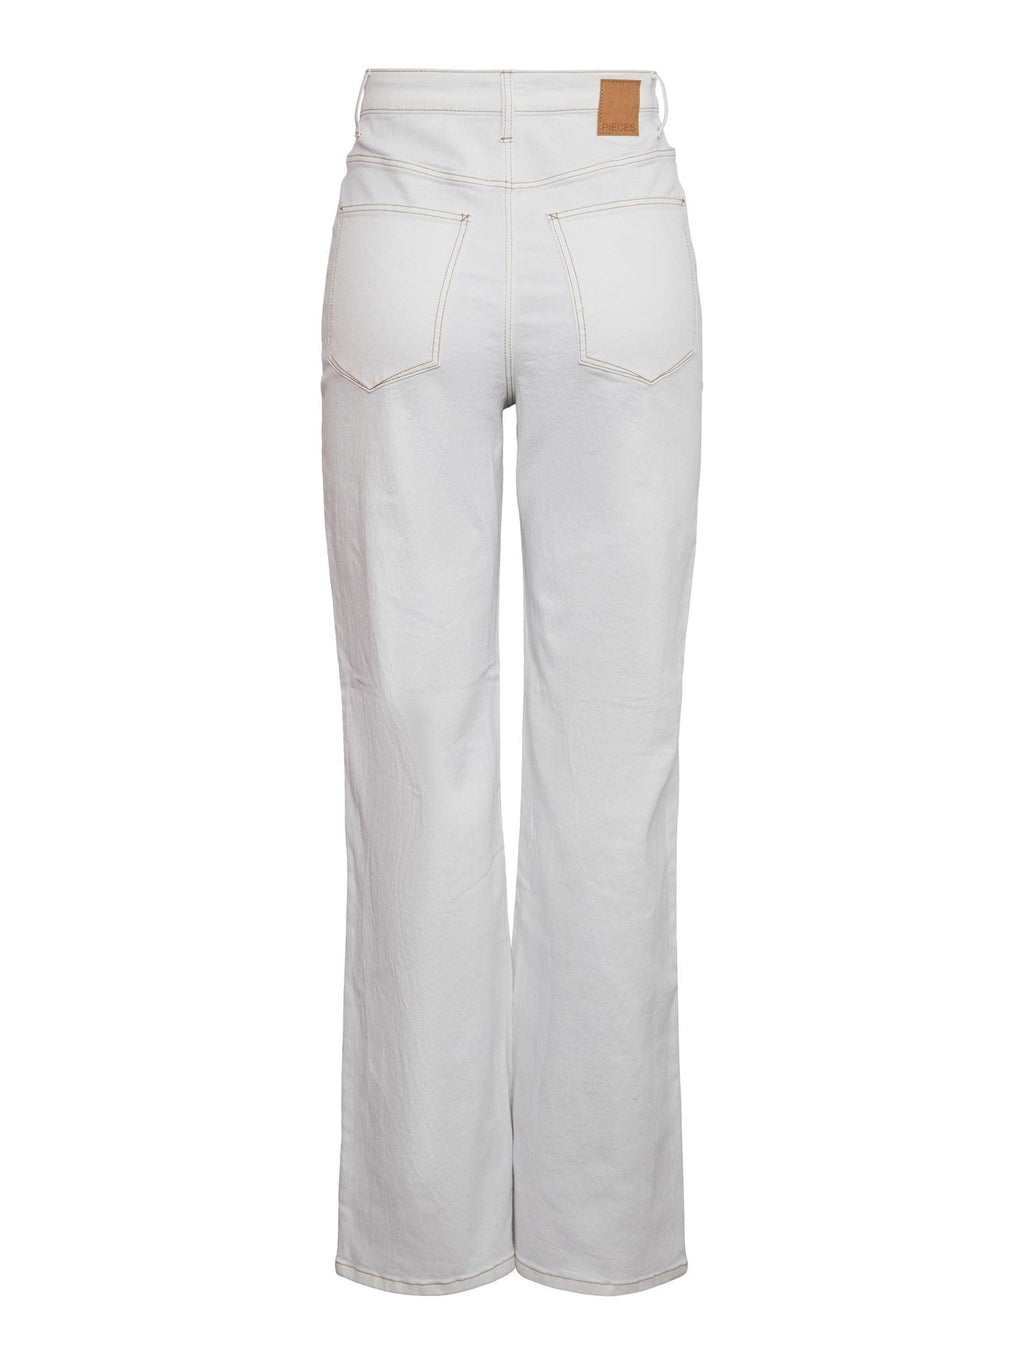 Jeans Noah Ultra High -Waist - White